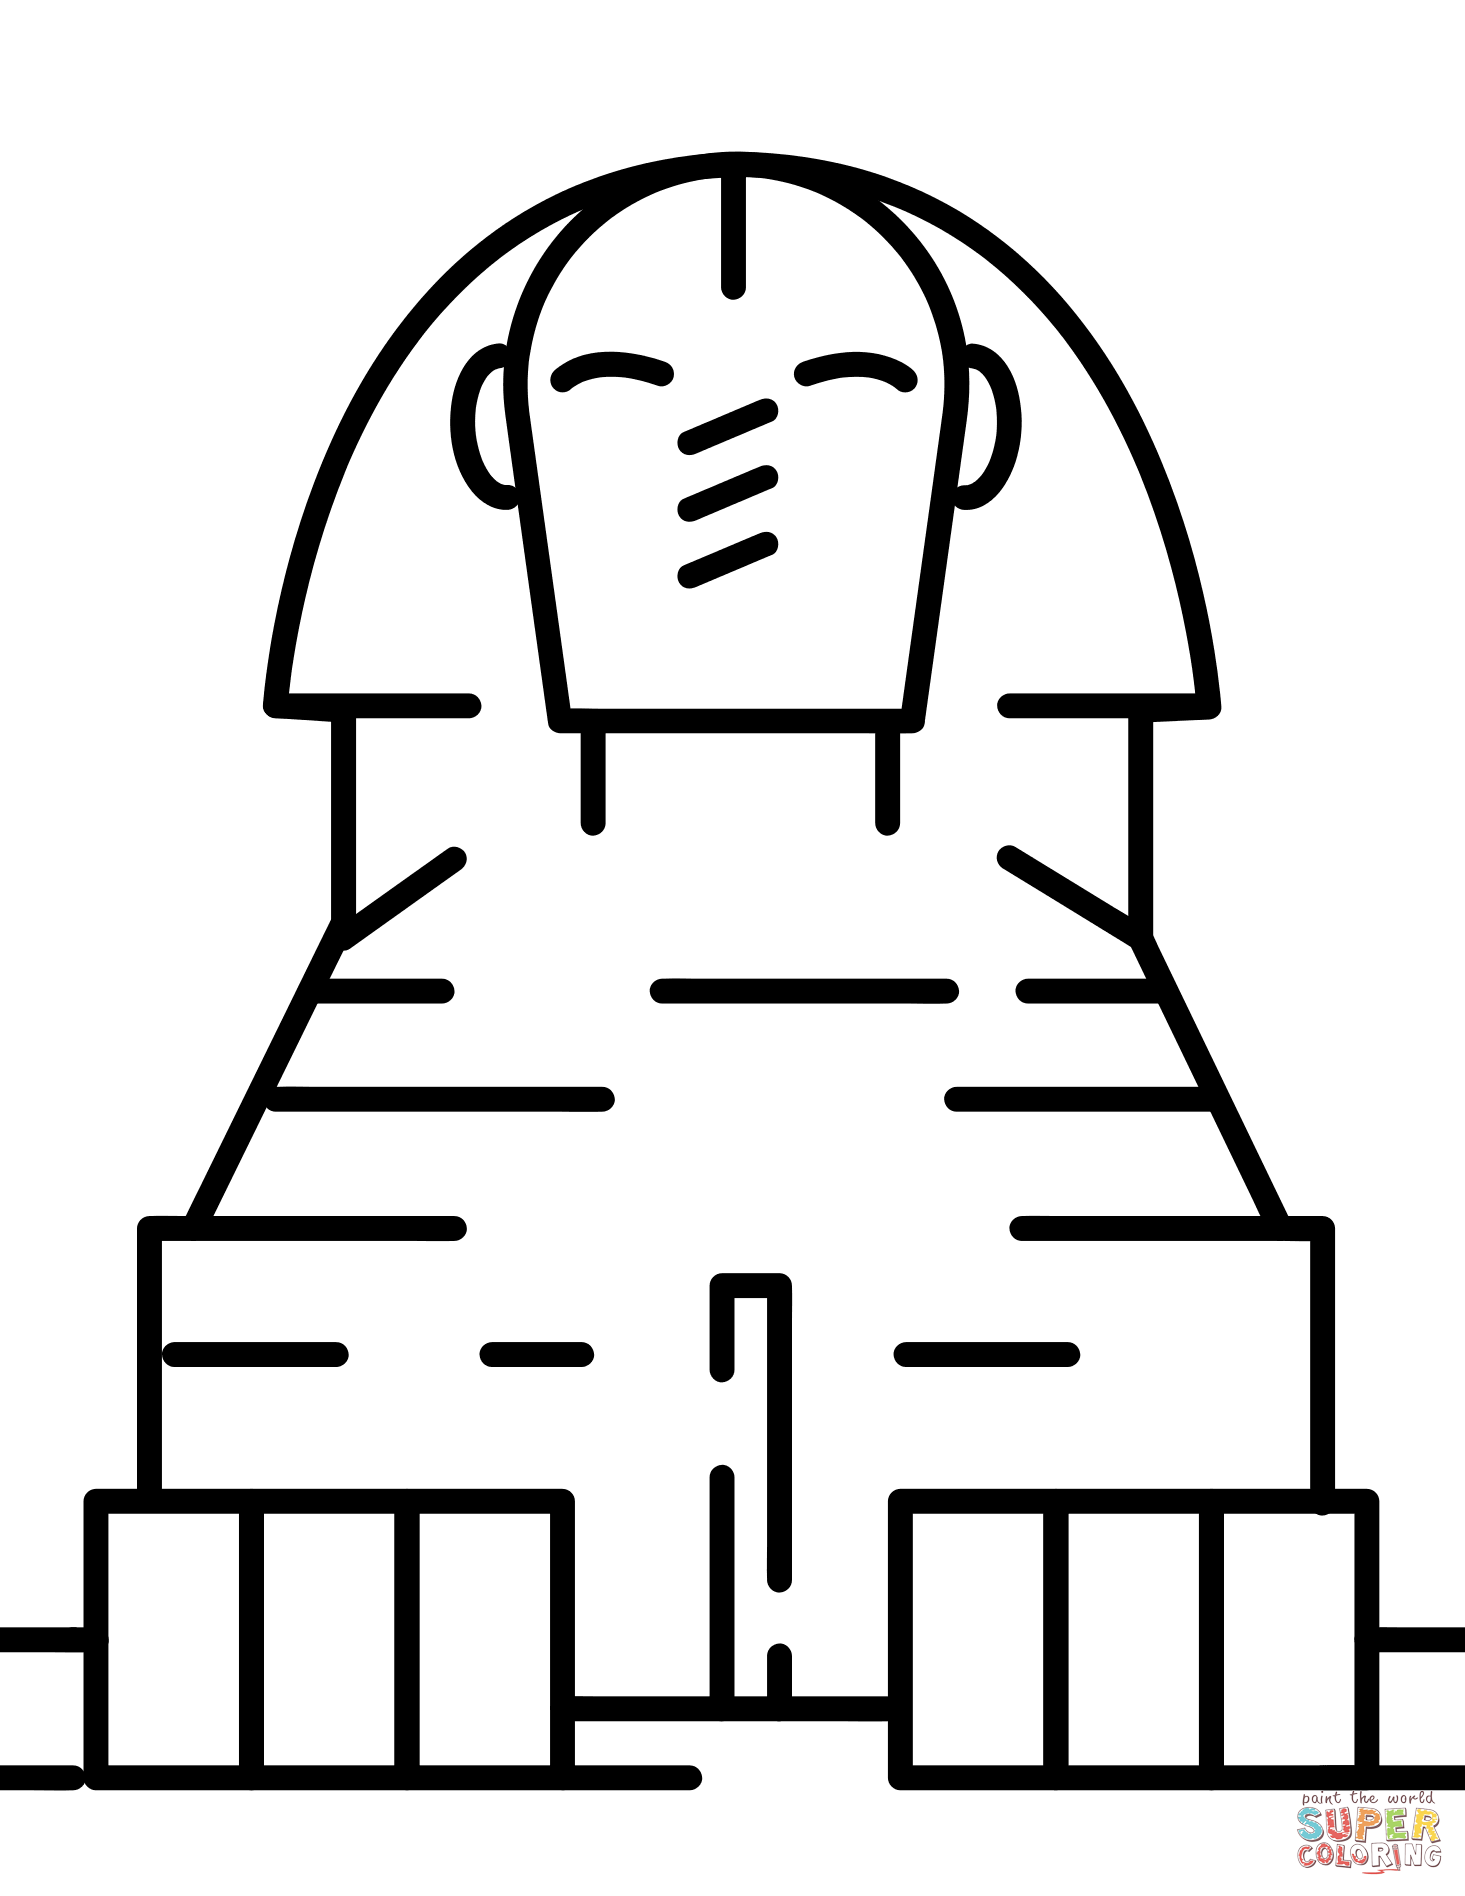 Sphinx Head PNG - 85379